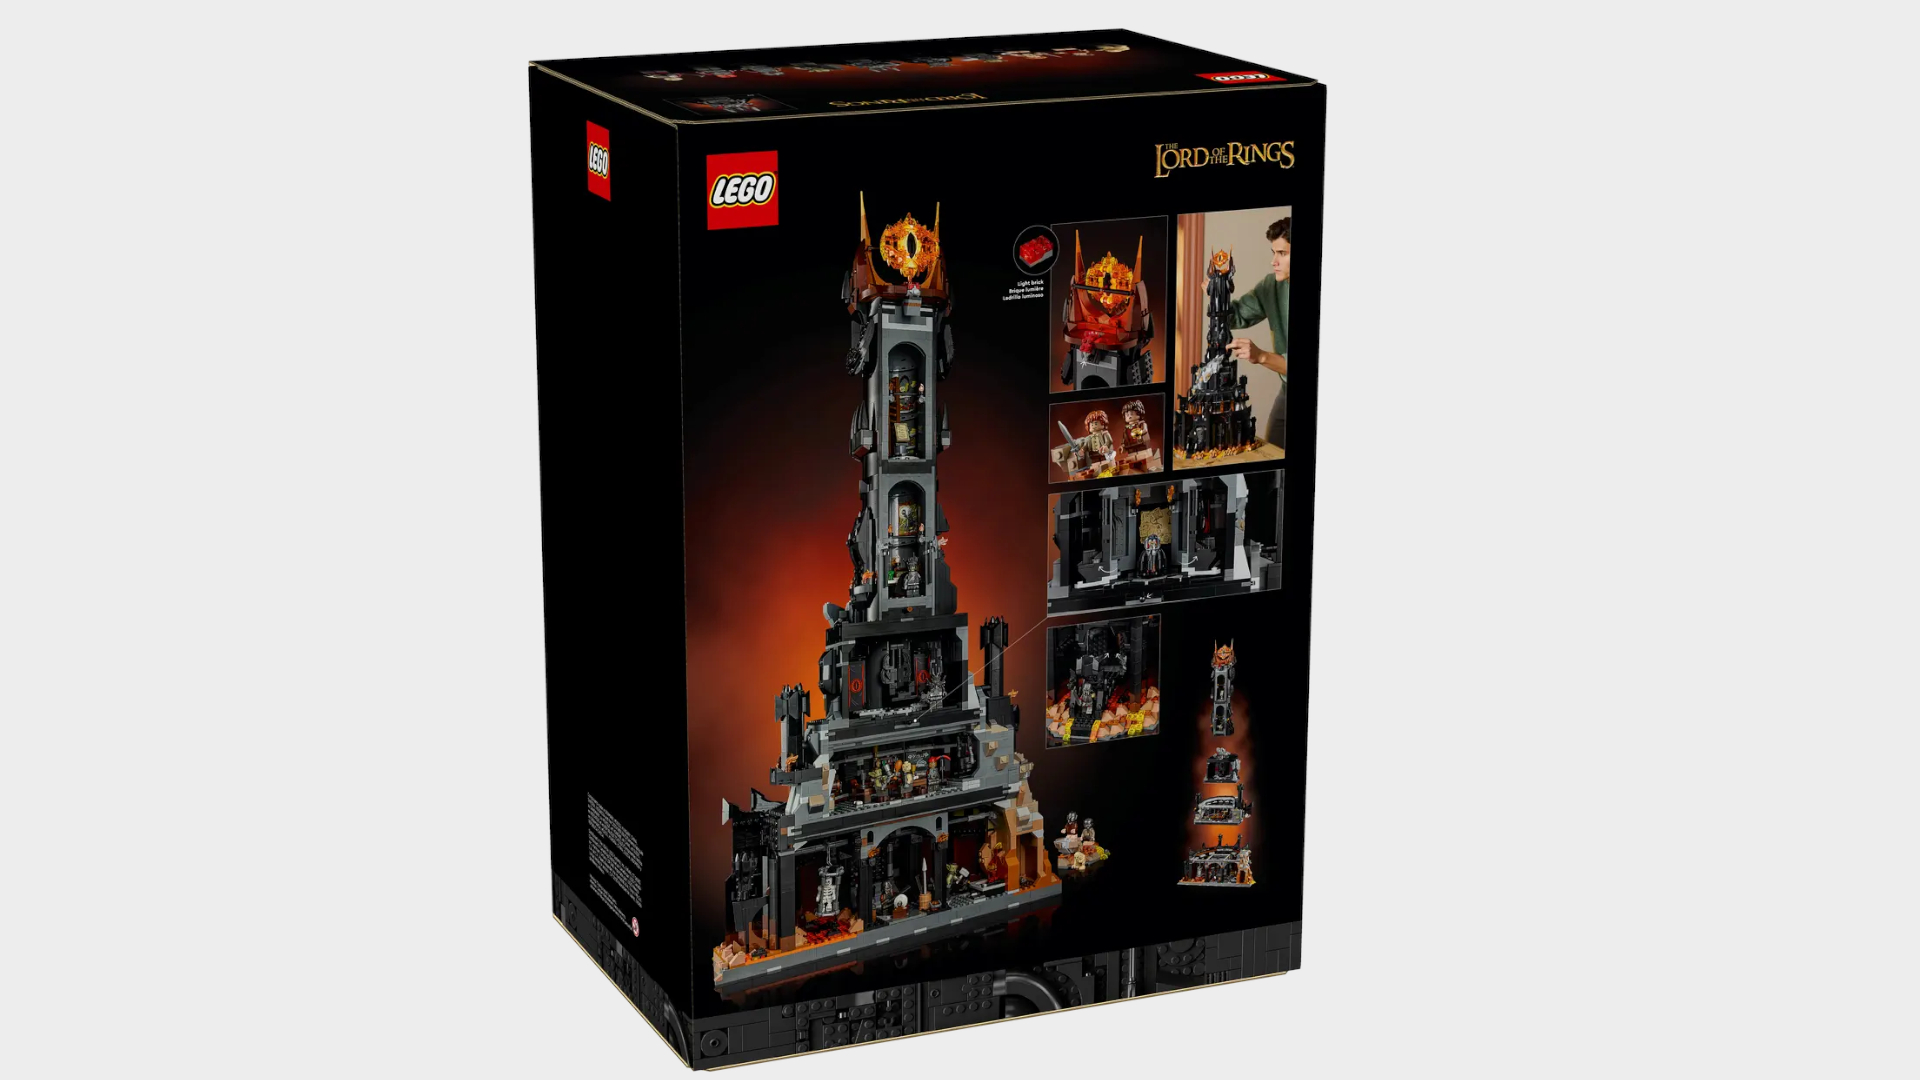 Lego Barad-dur pieces against a plain background